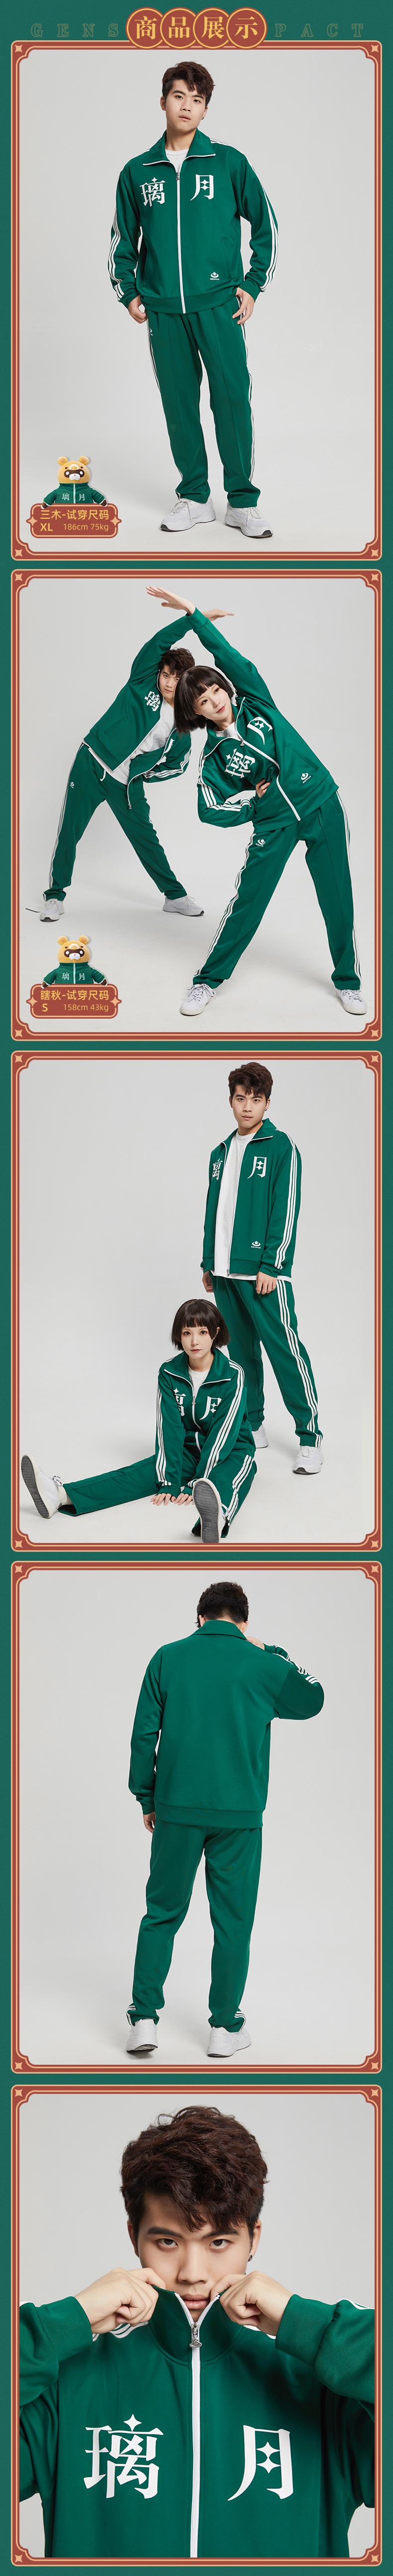 Genshin Impact Liyue themed sportswear